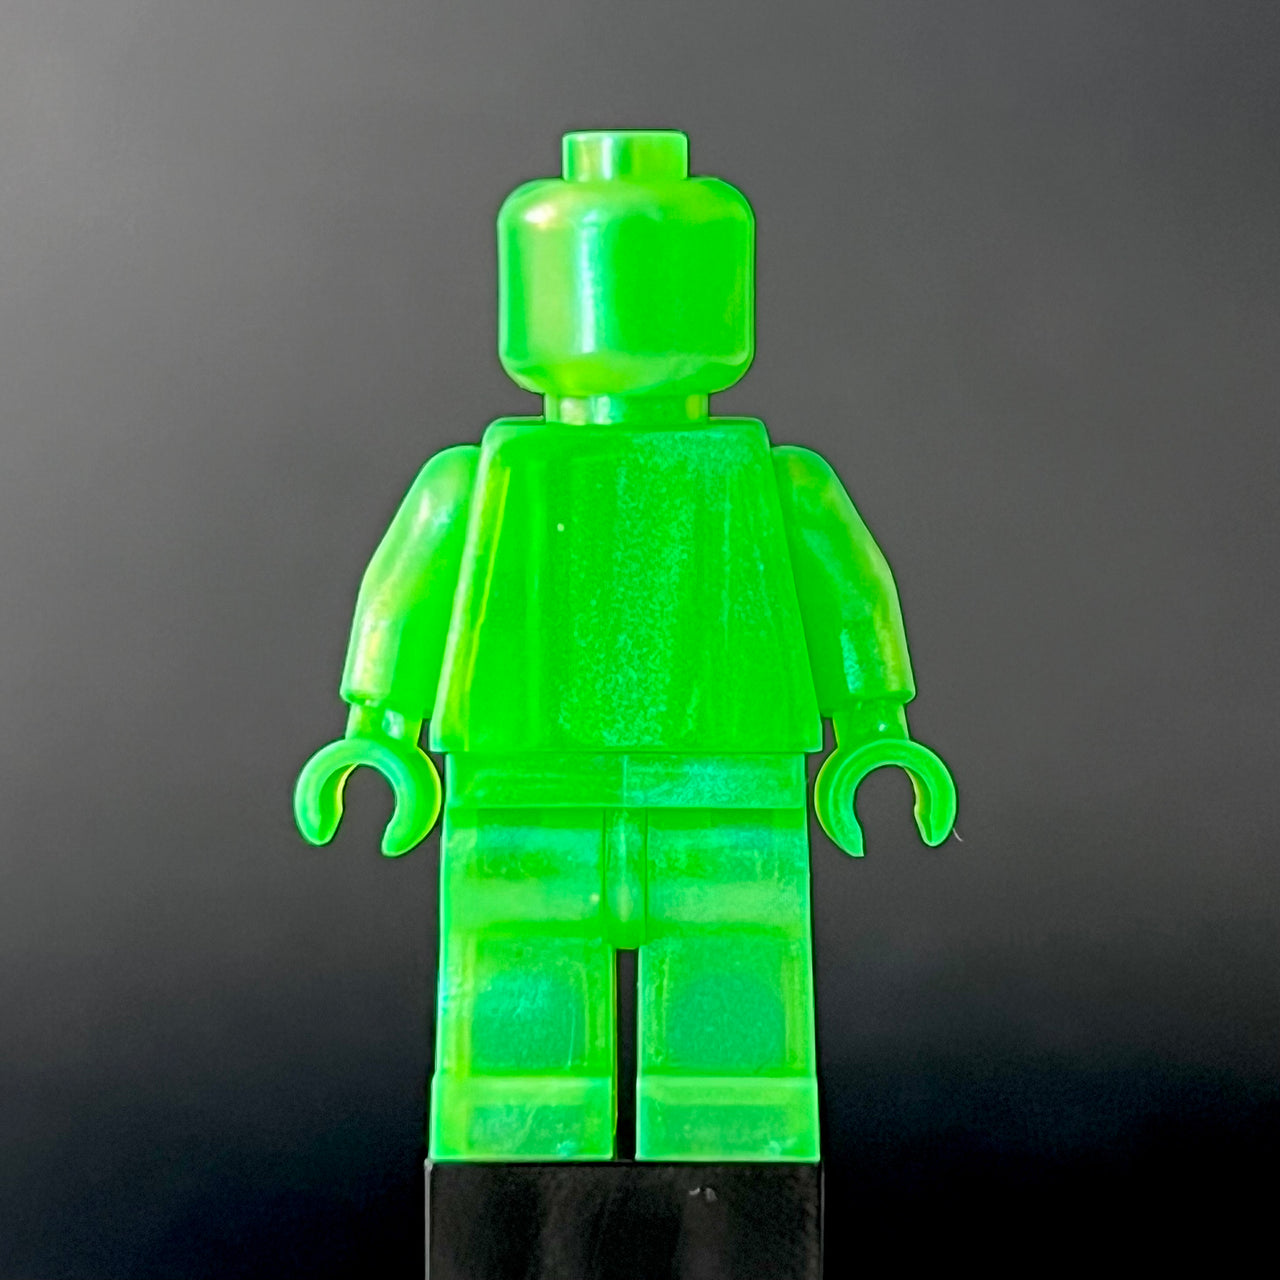 Satin-Bright Green Monochrome Figure